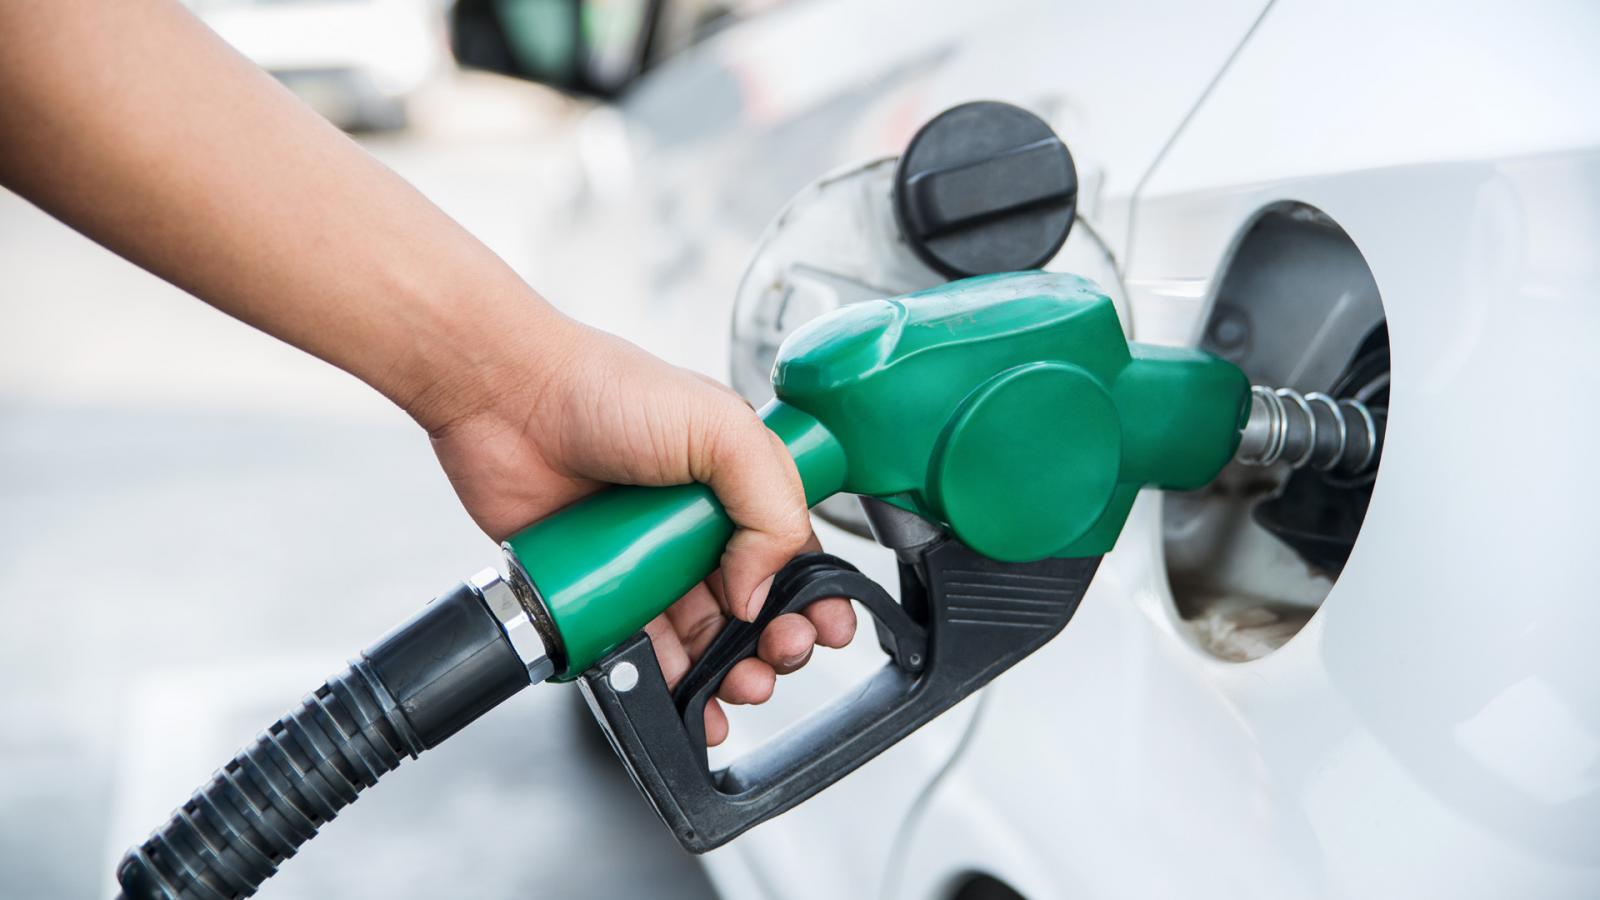 Πώς νοθεύεται η βενζίνη; – Τι πρέπει να κάνετε αν σας εξαπατήσουν στο βενζινάδικο;